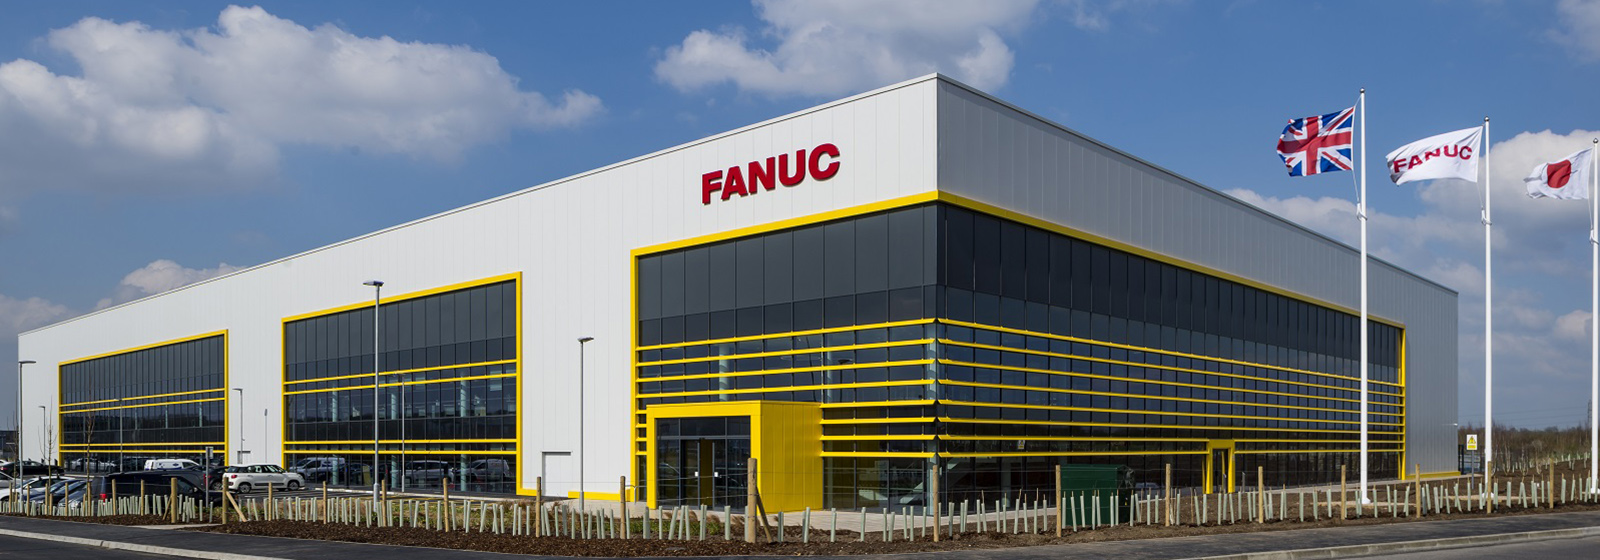 Fanuc UK Limited